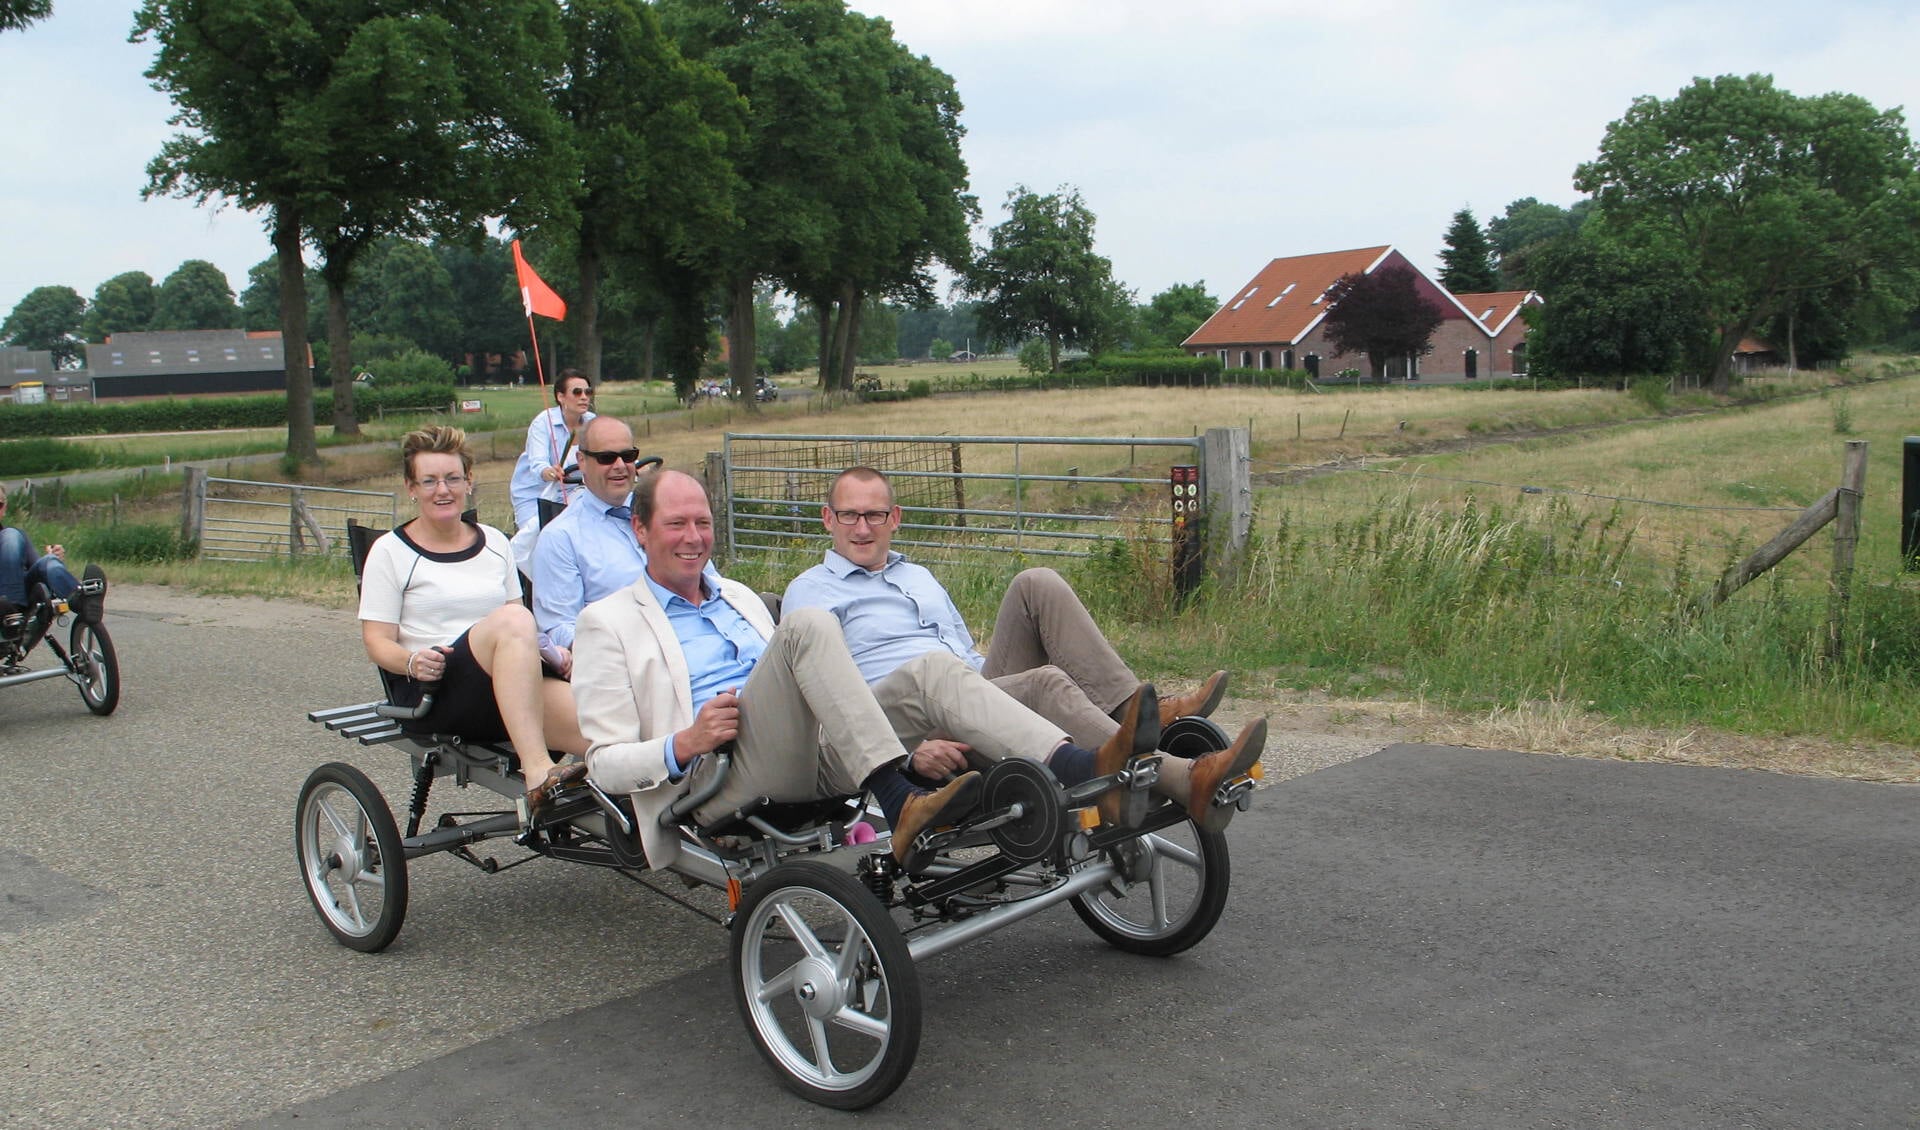 Marieke Frank, Jan Jacob van Dijk, Ted Kok en Gert-Jan te Gronde verkennen op één fiets de nieuwe wandelroute. Foto: Bernhard Harfsterkamp